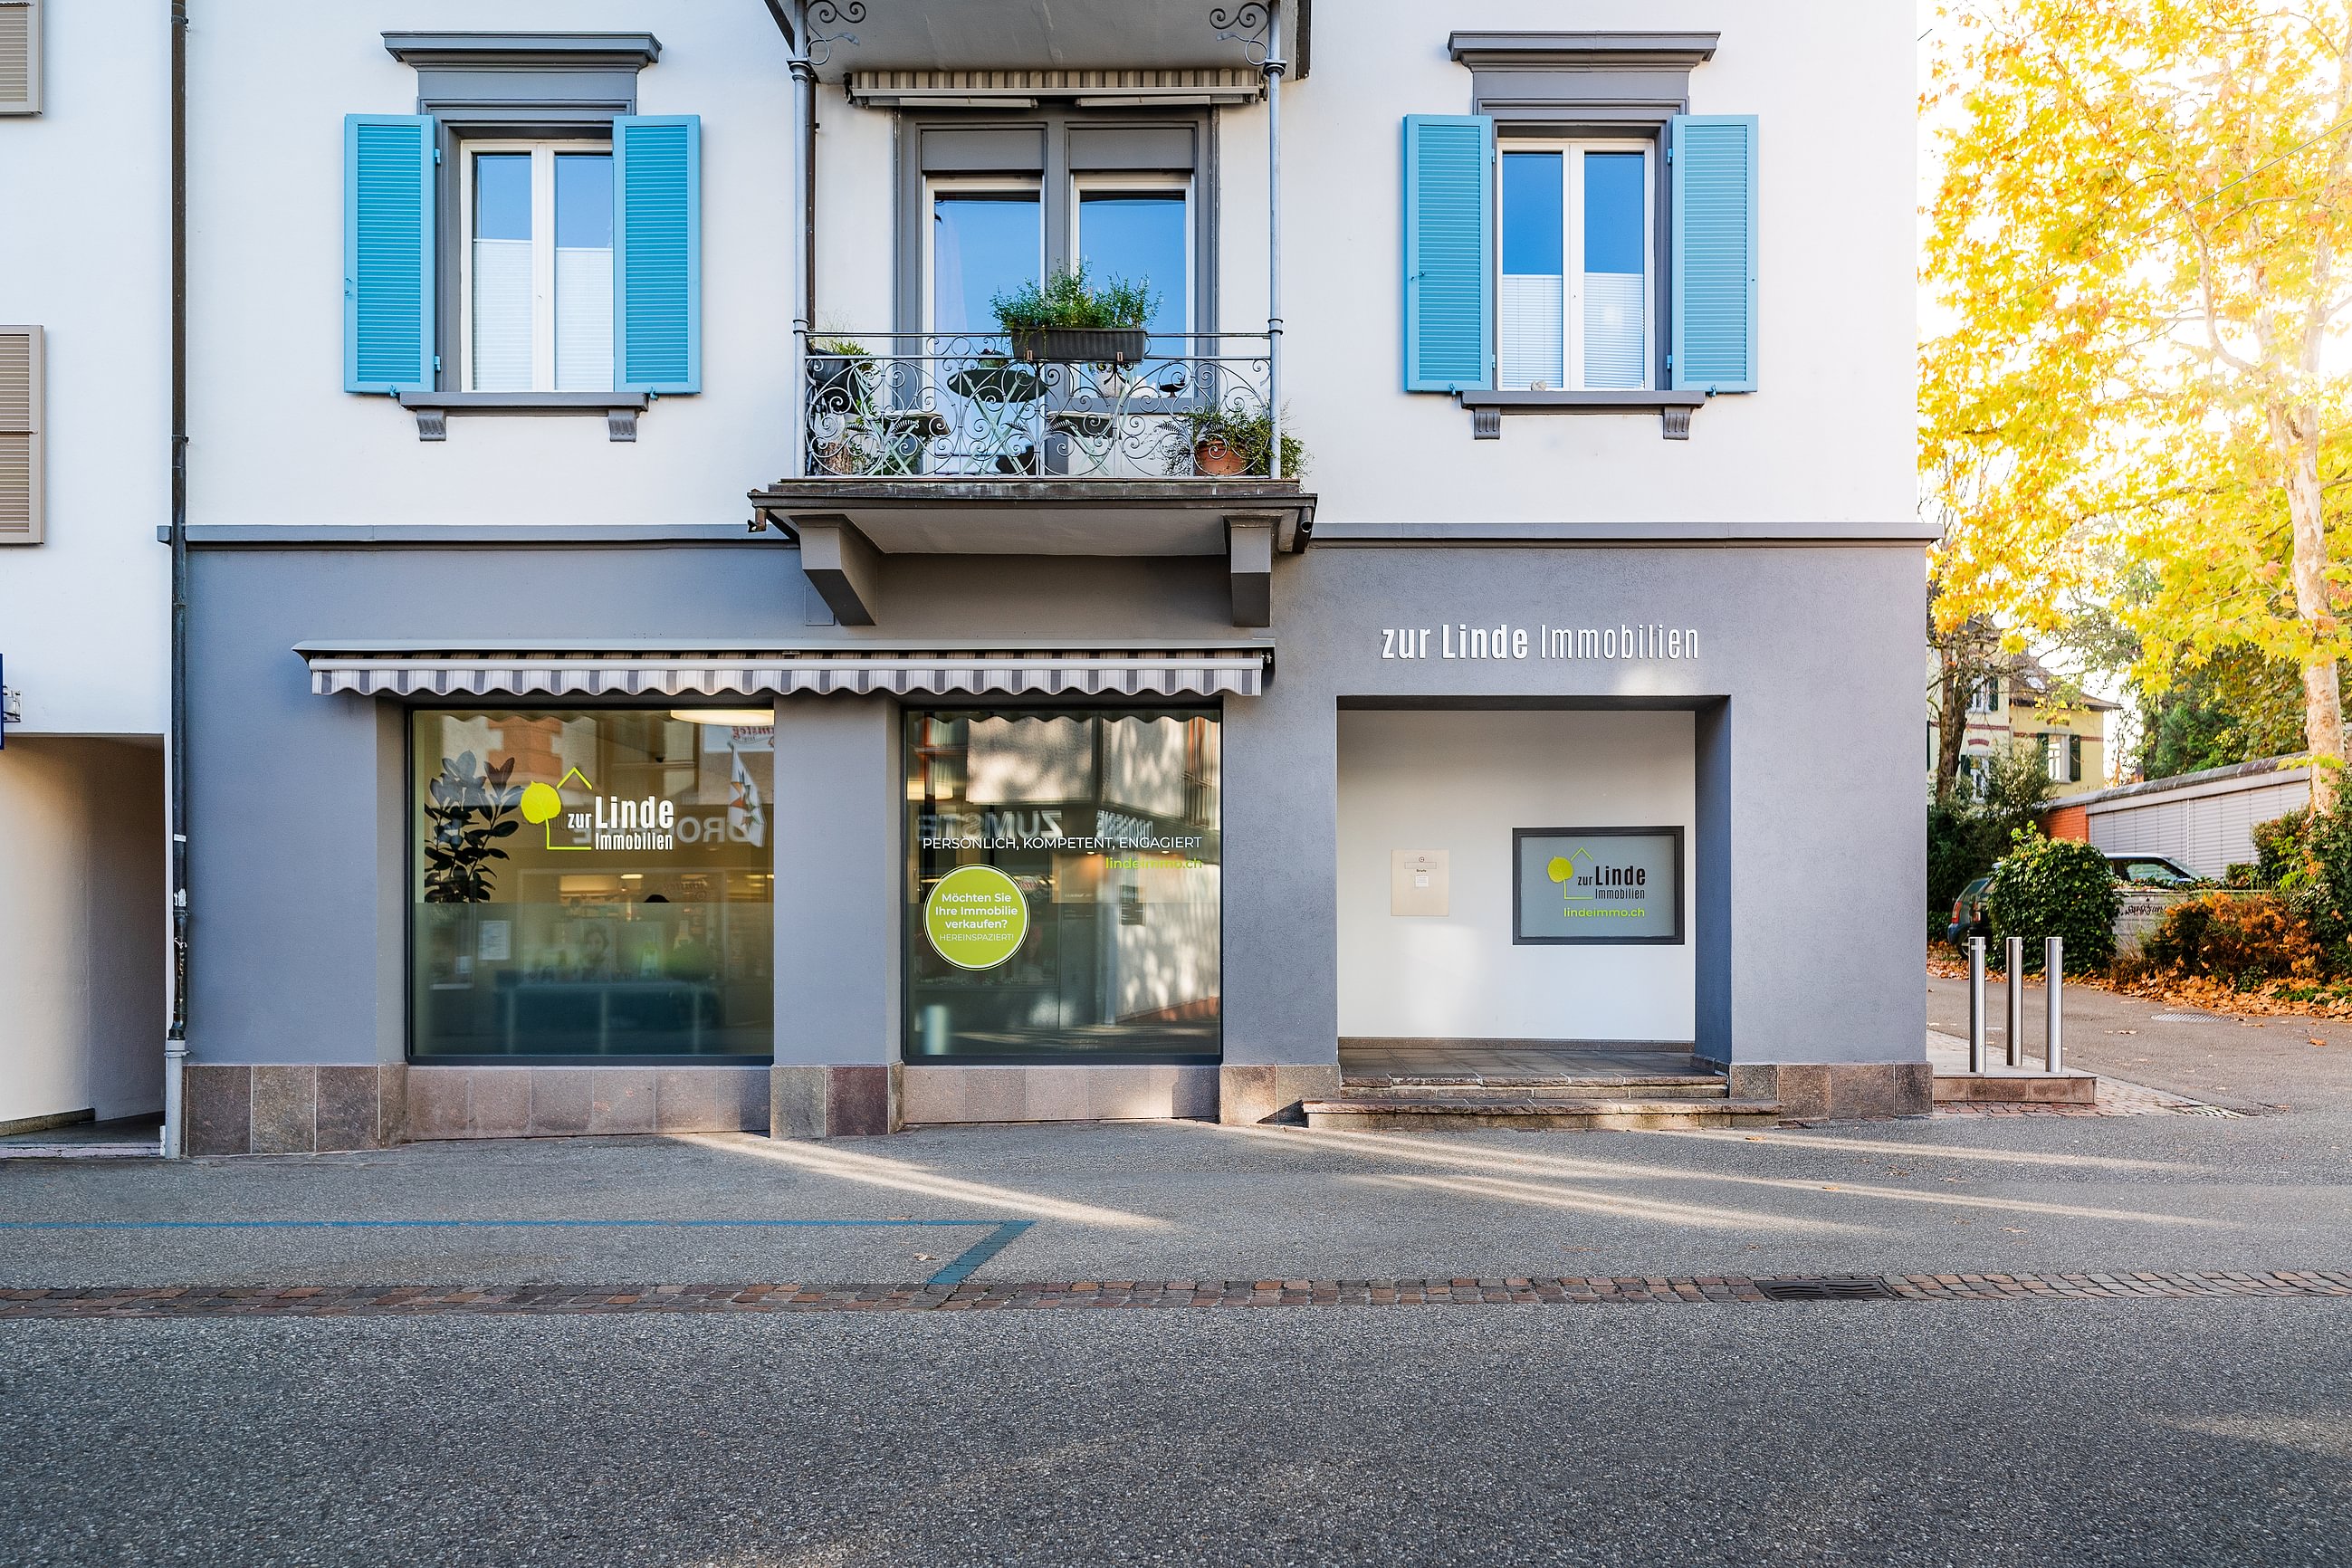 Bilder zur Linde Immobilien GmbH